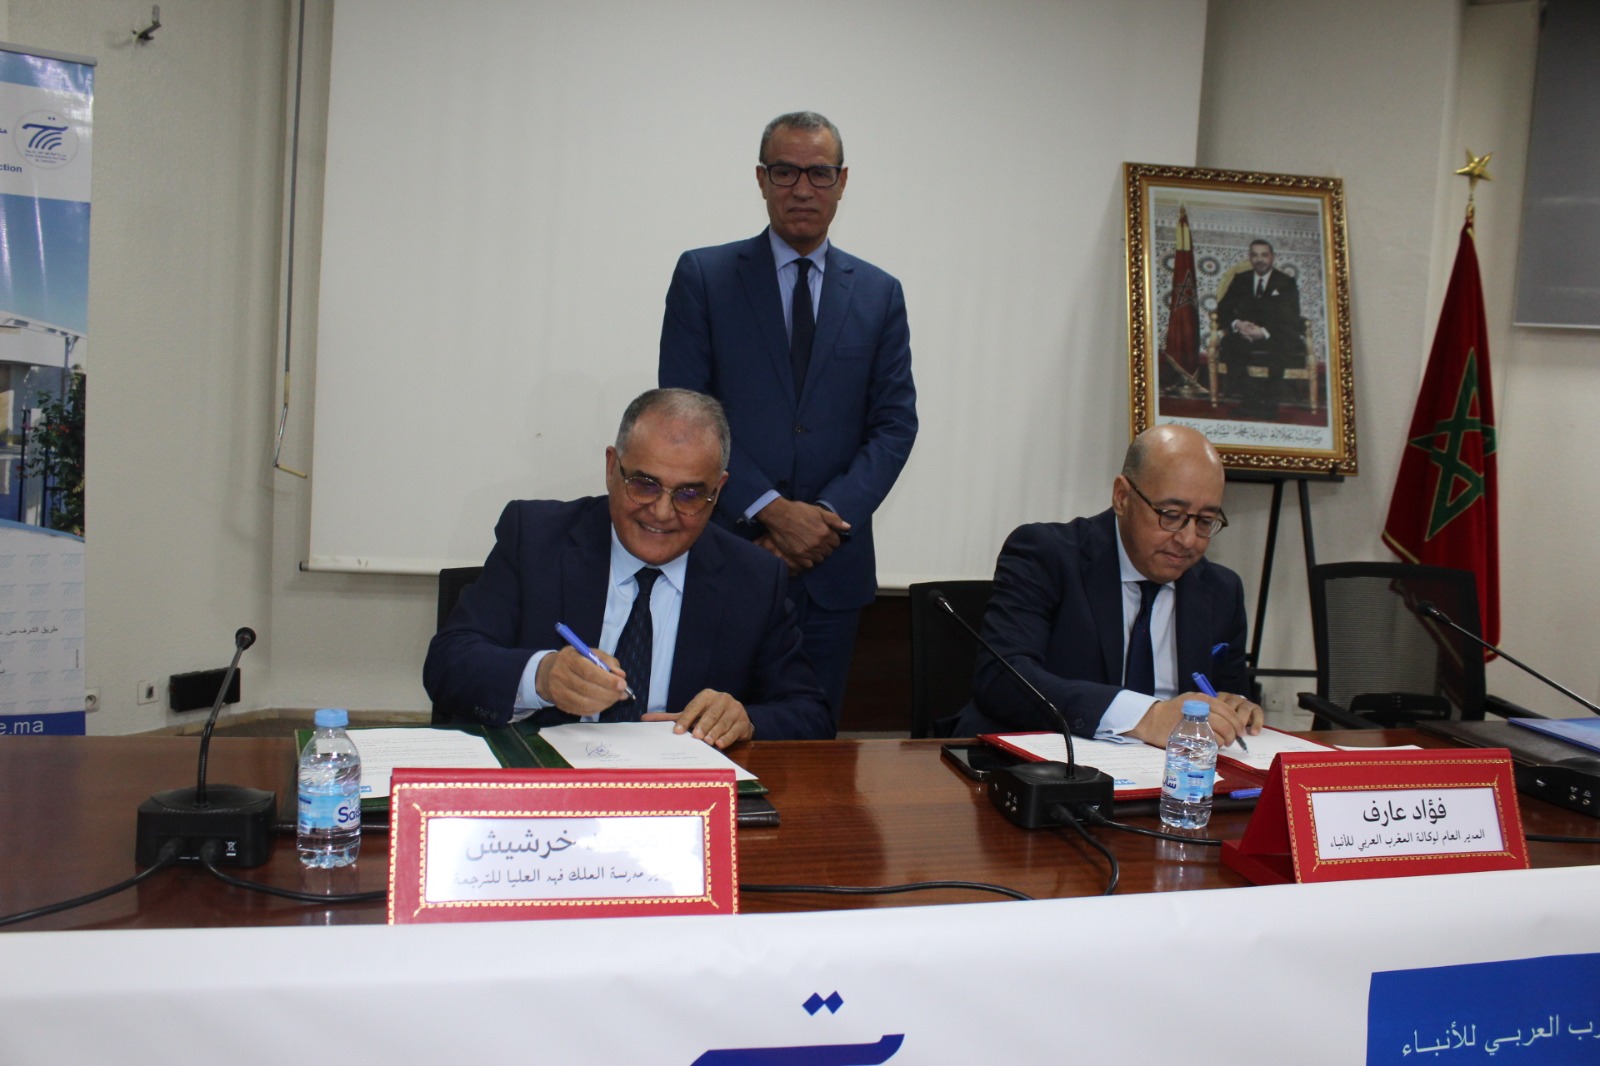 وكالة المغرب العربي للأنباء ومدرسة الملك فهد العليا للترجمة يوقعان اتفاقية شراكة وتعاون